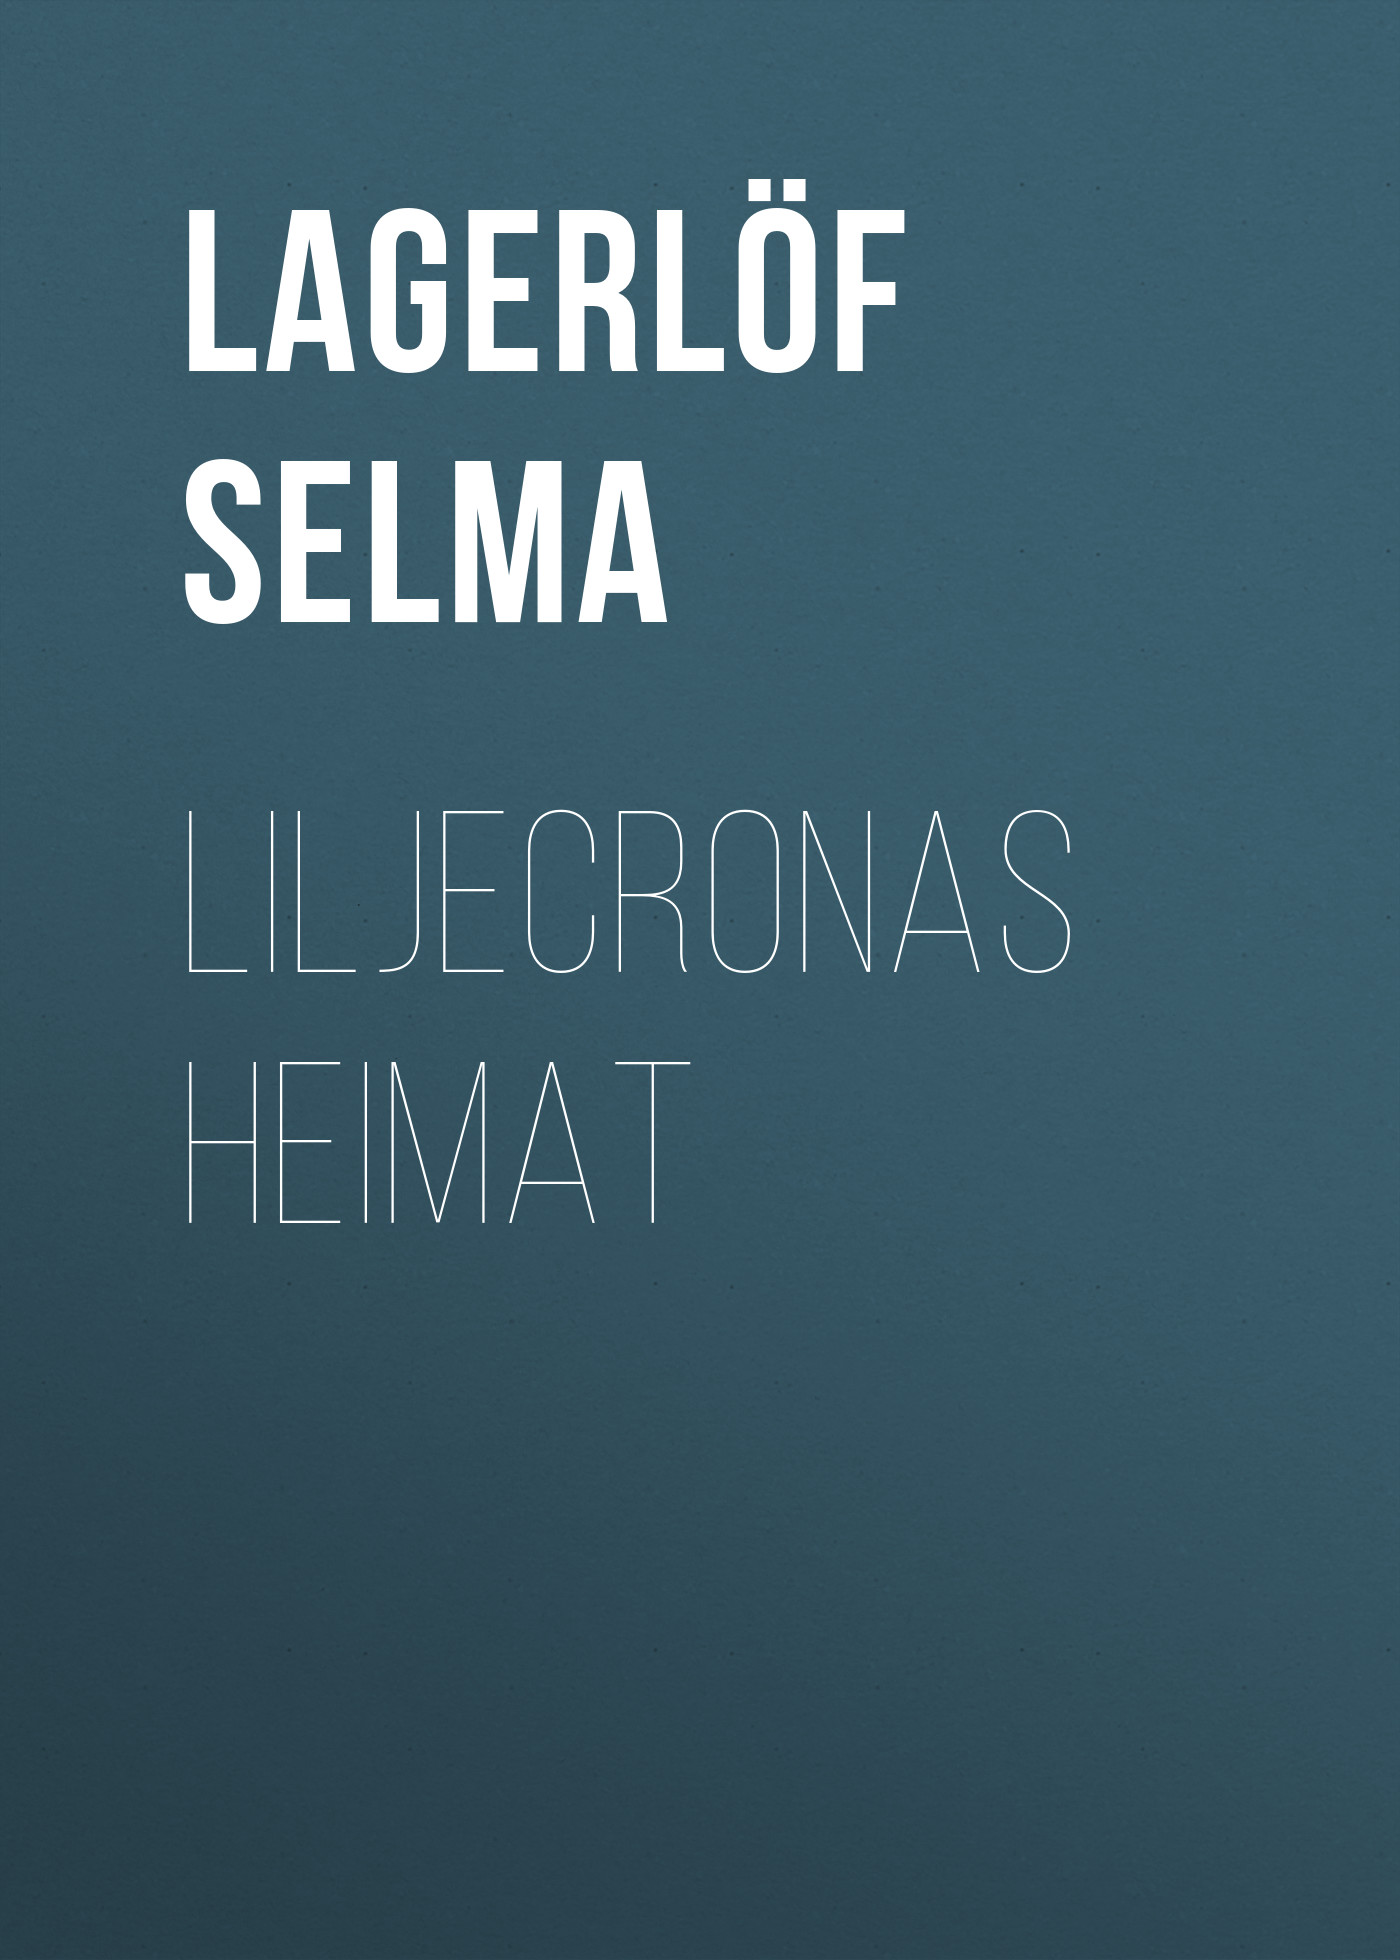 Книга Liljecronas Heimat из серии , созданная Selma Lagerlöf, может относится к жанру Зарубежная старинная литература, Зарубежная классика. Стоимость электронной книги Liljecronas Heimat с идентификатором 25230388 составляет 0 руб.